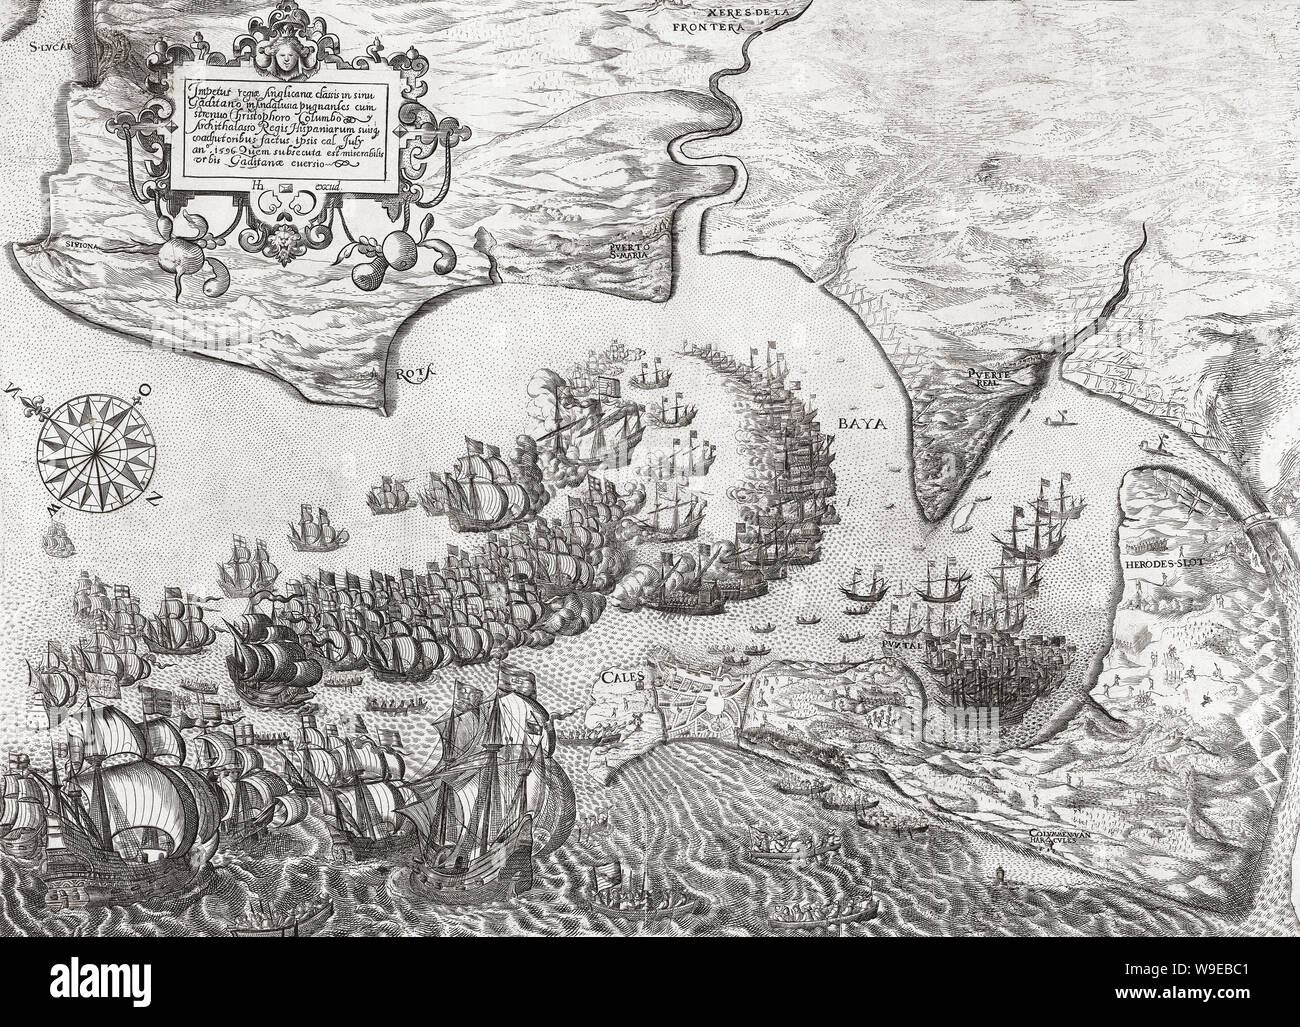 Niederlage der spanischen Flotte und dem Sturz von Cadiz, am 1. Juli 1596 durch ein britisch-niederländische Flotte während der anglo-spanish Krieg. Stockfoto